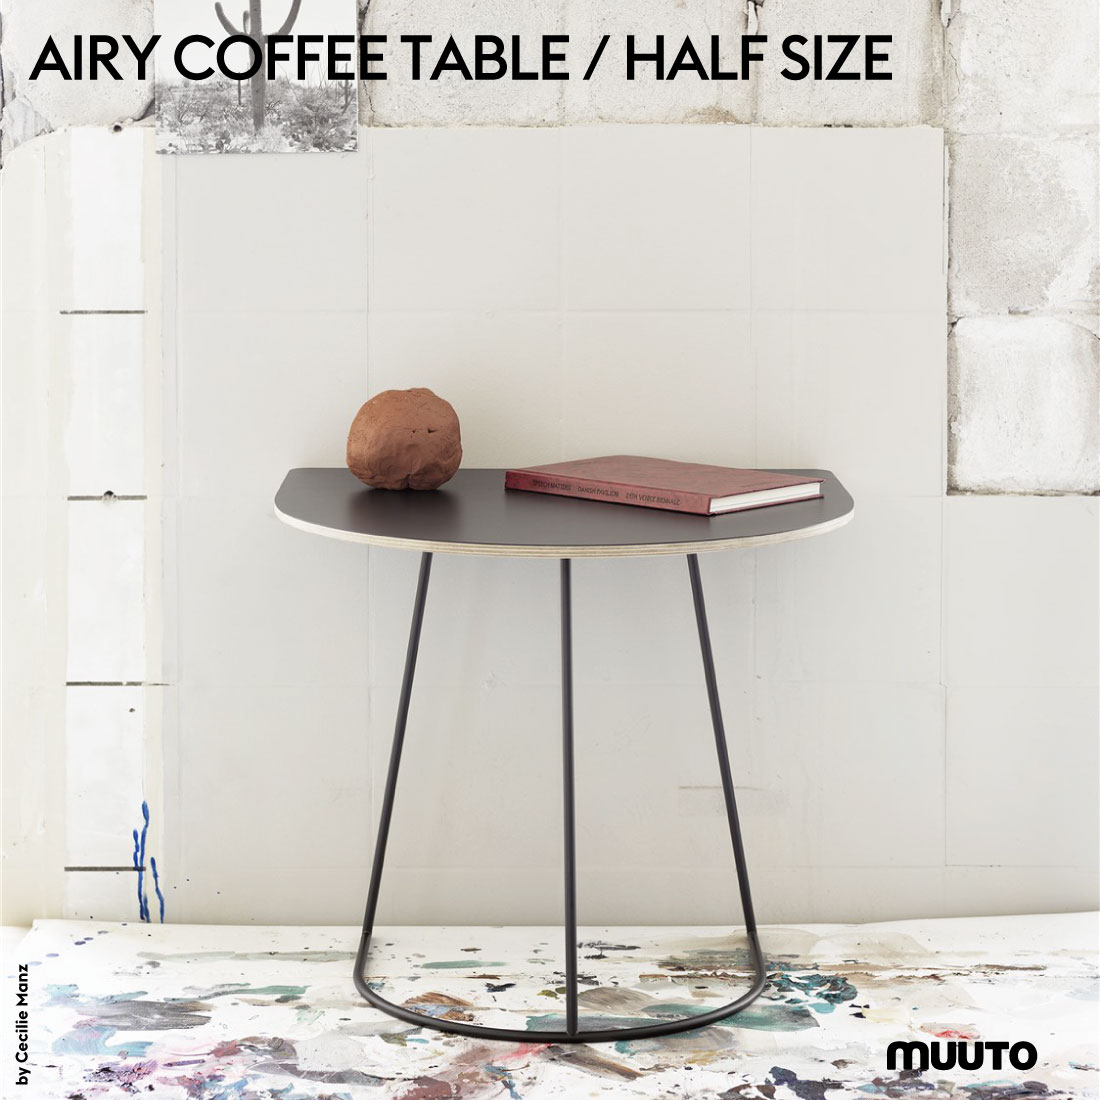 新進気鋭スカンジナビア北欧デザインブランド  Muuto ムート AIRY COFFEE TABLE   HALF SIZE エアリーコーヒーテーブル ハーフサイズ プライウッド FENIXラミネート Cecilie Manz セシリエ・マンツ